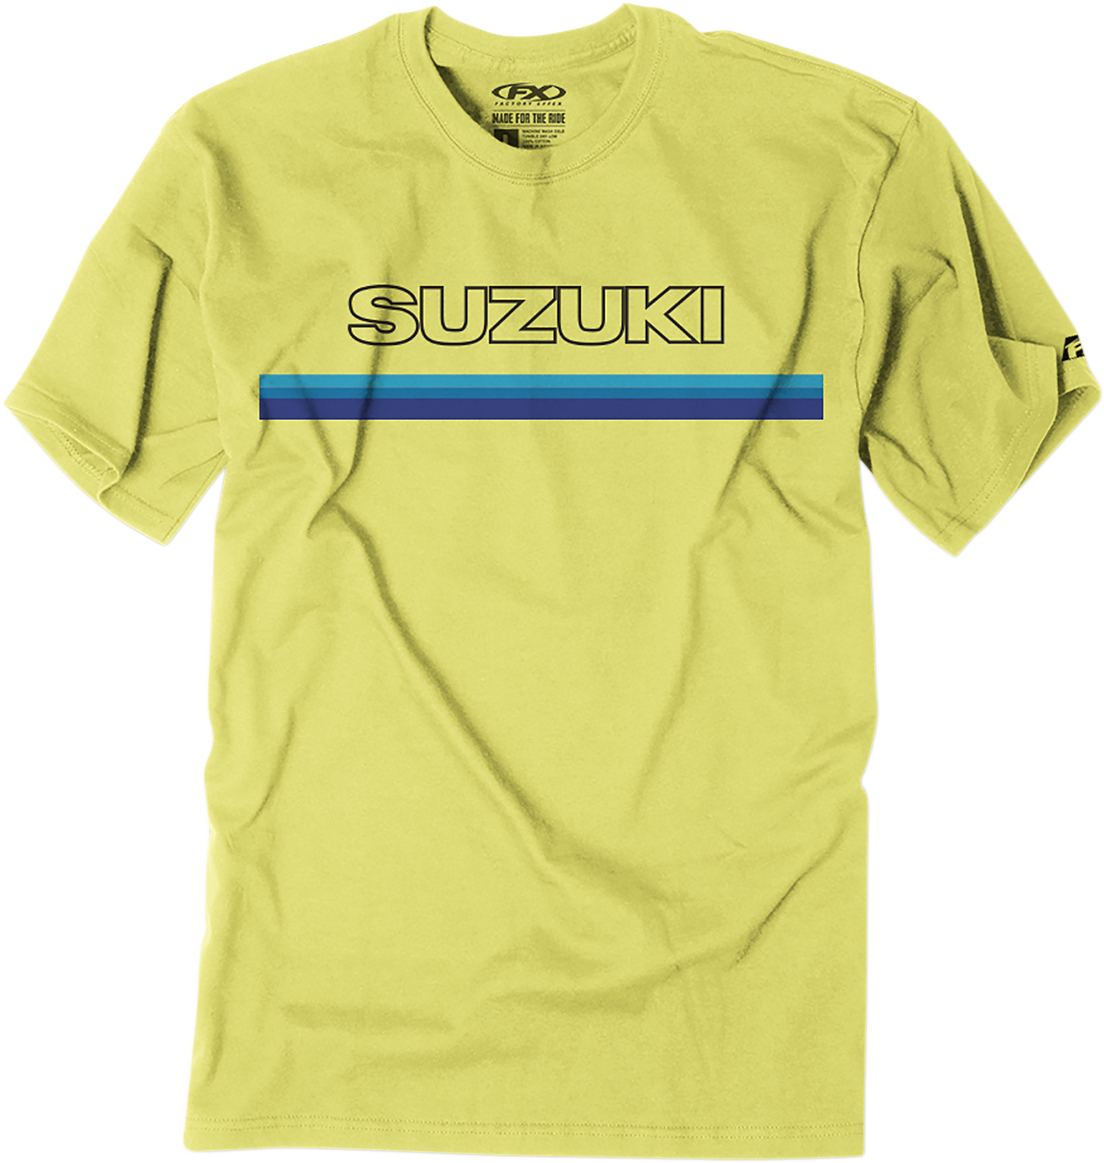 FACTORY EFFEX Suzuki Throwback T-Shirt - Yellow - Medium 23-87402